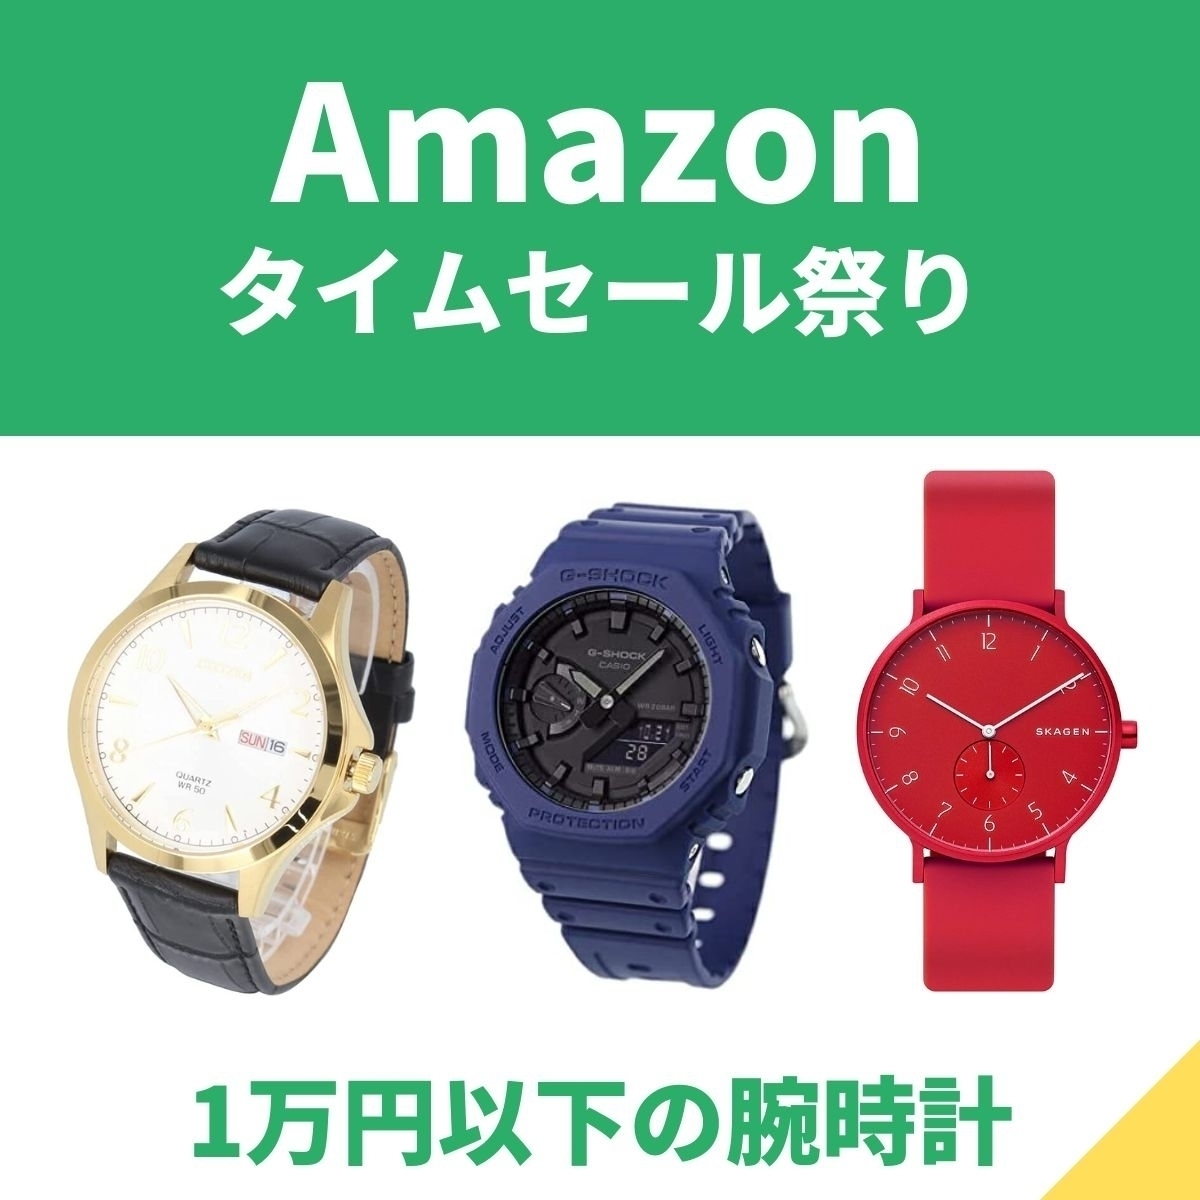 1万円以下の腕時計がAmazonタイムセール祭りに シチズンやカシオ ...